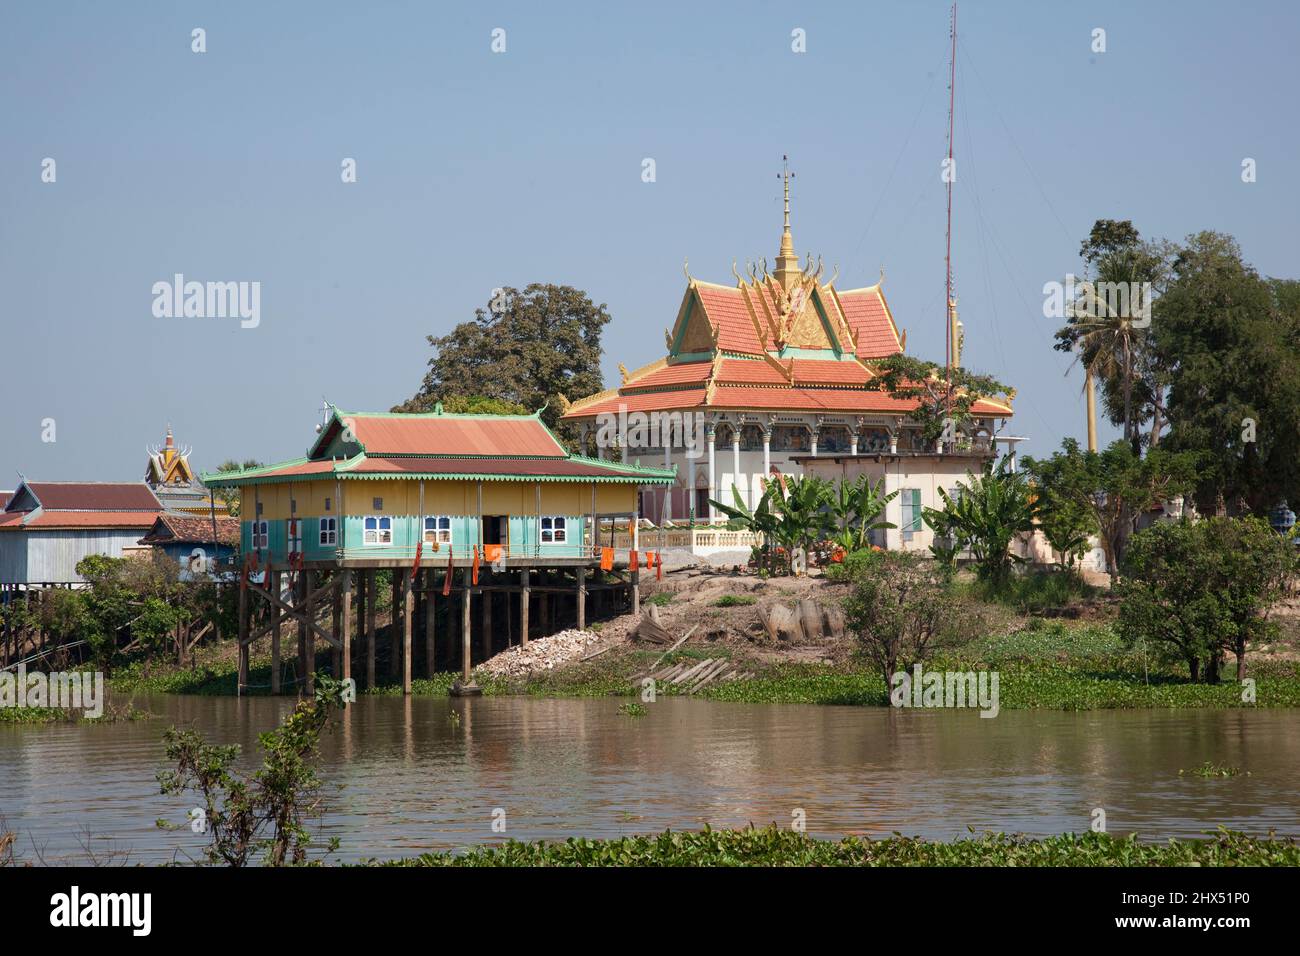 Cambodge, Kompong Khleang, pagode de pilotis et maisons Banque D'Images